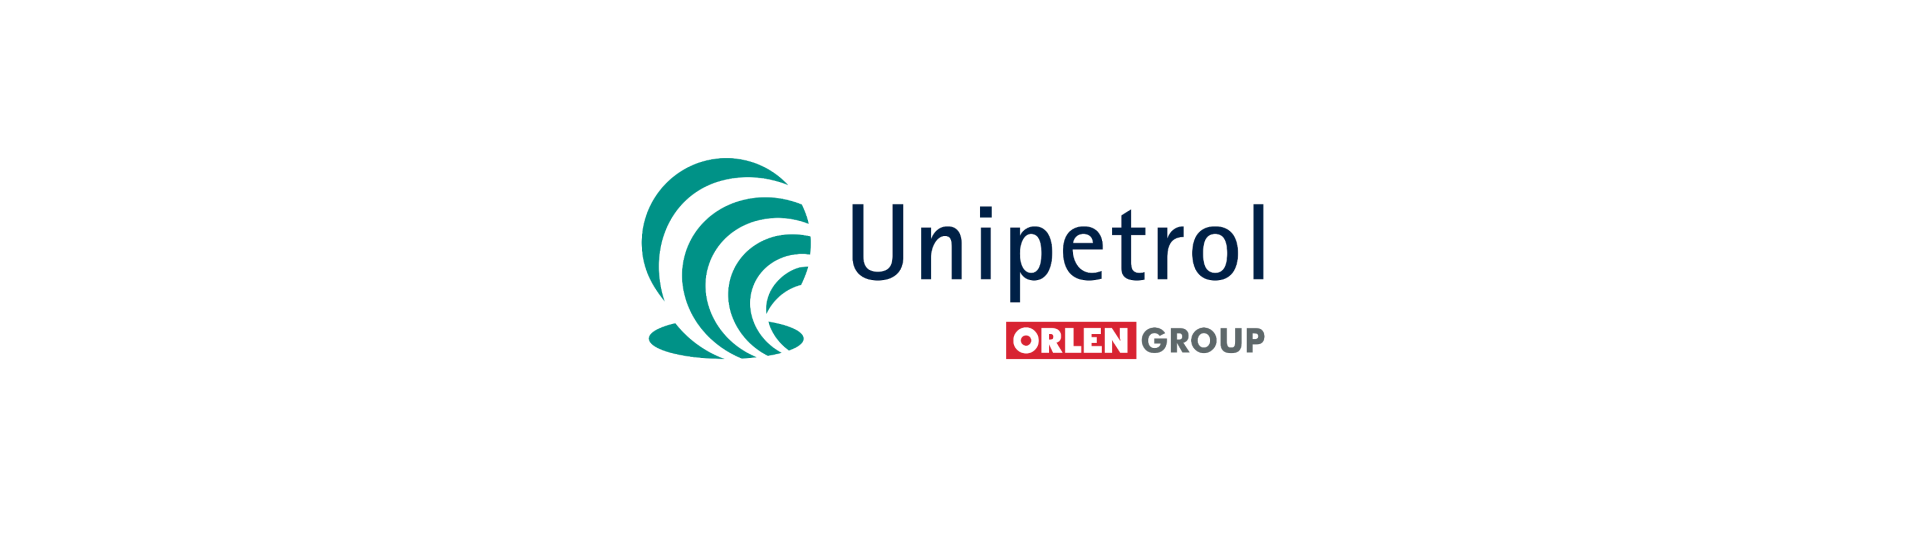 Akcie Unipetrol jsou relativně podhodnocené